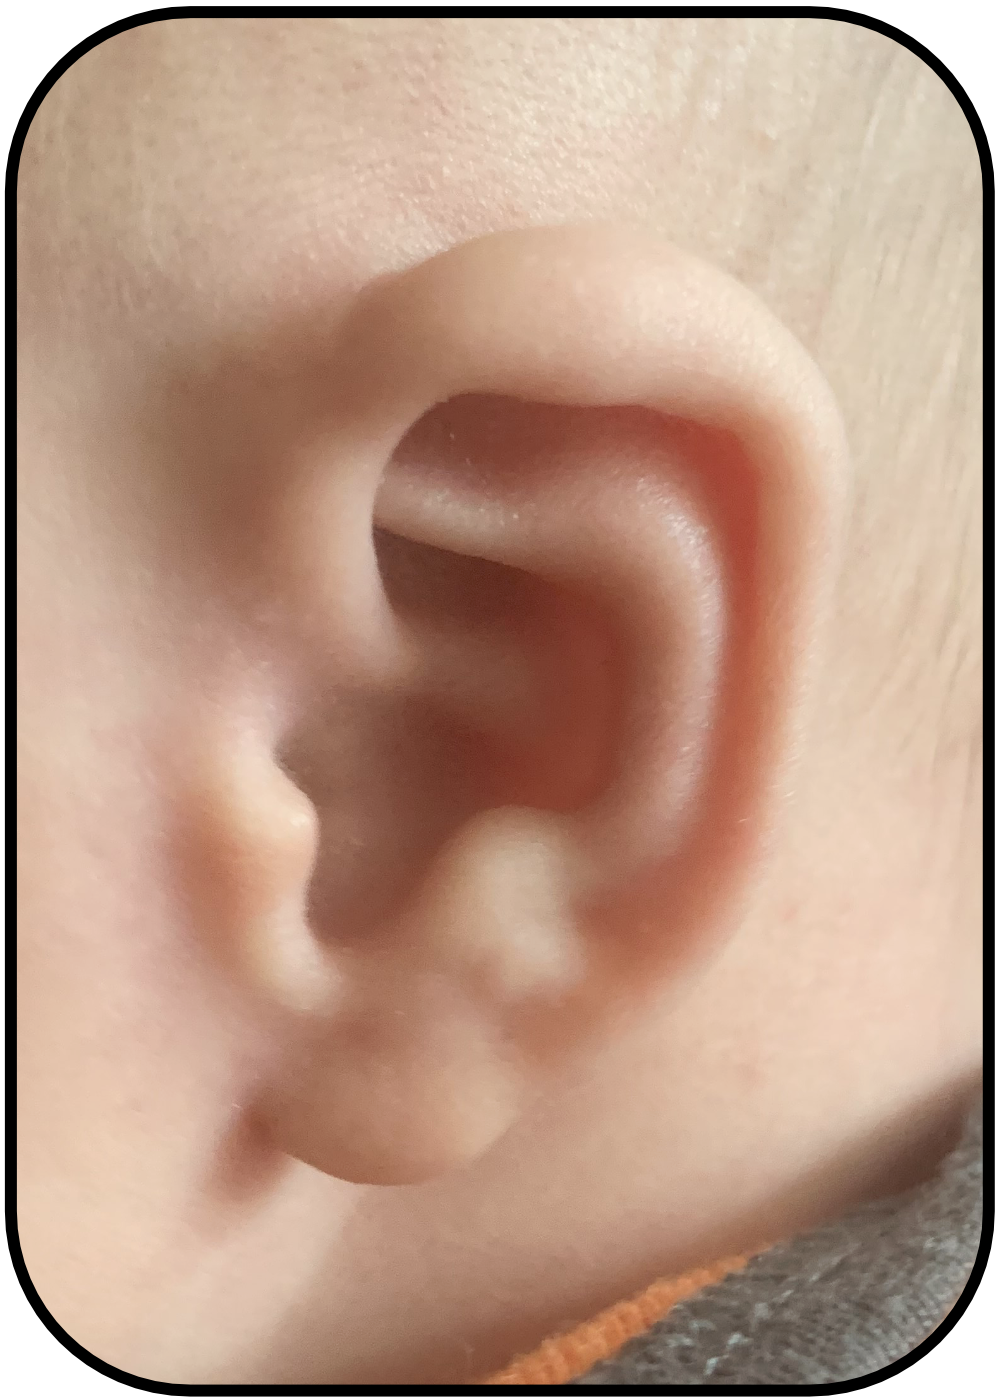 baby ear folds down